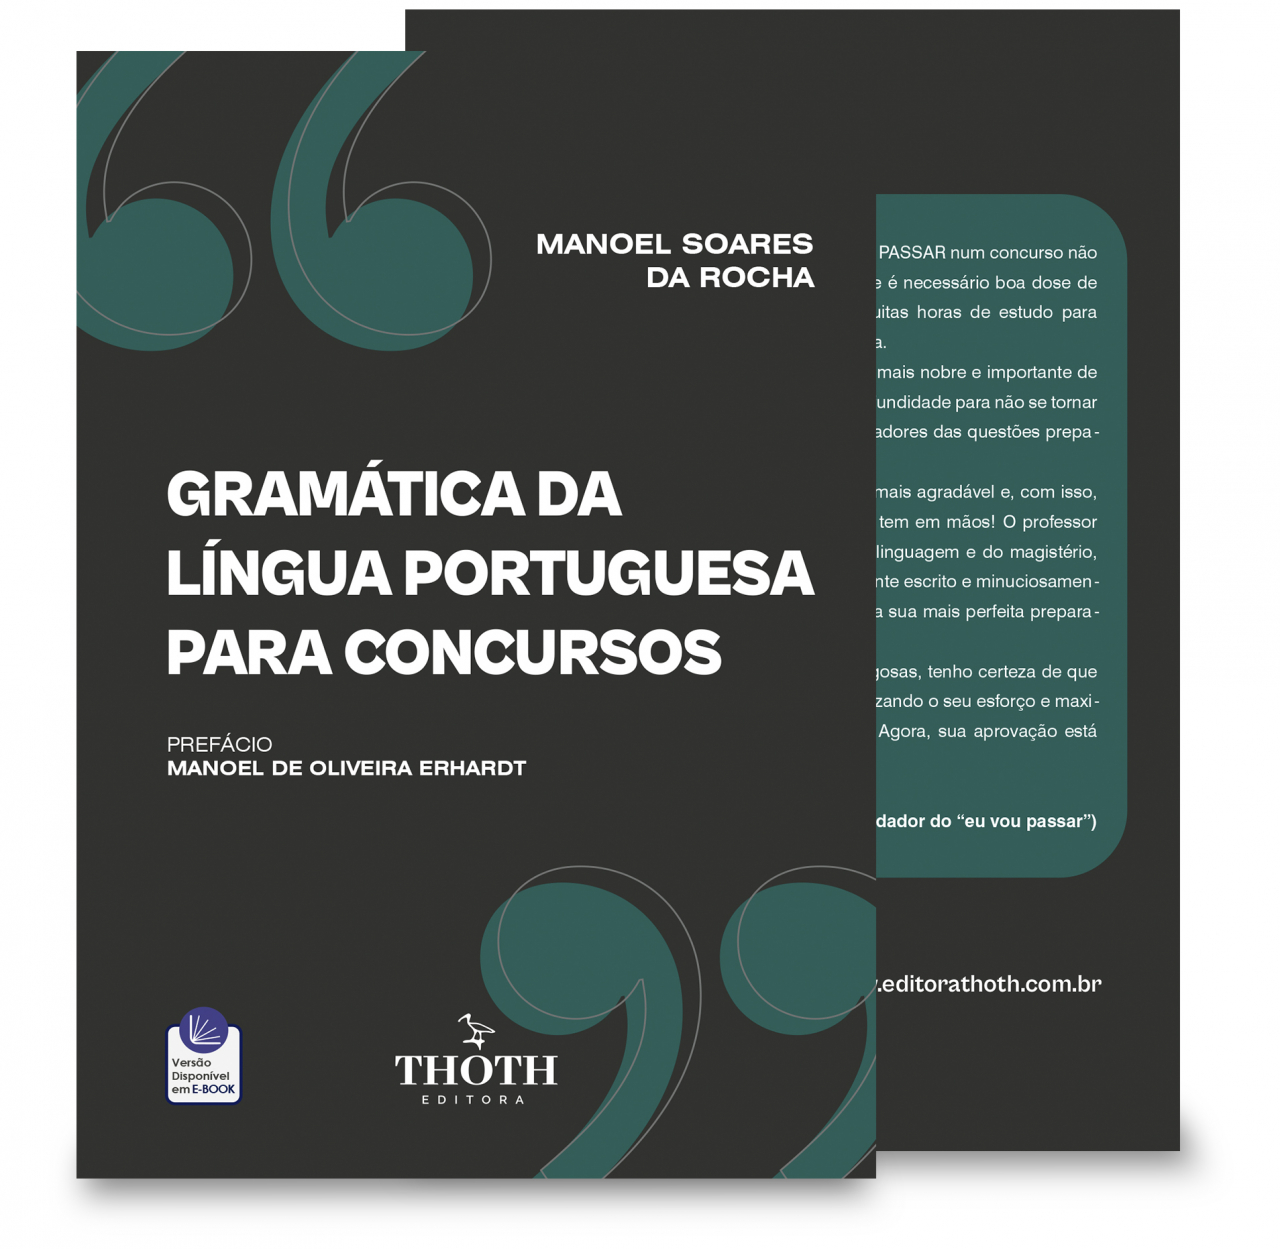 Conhecimentos Gerais e Atualidades, PDF, Assunto (gramática)